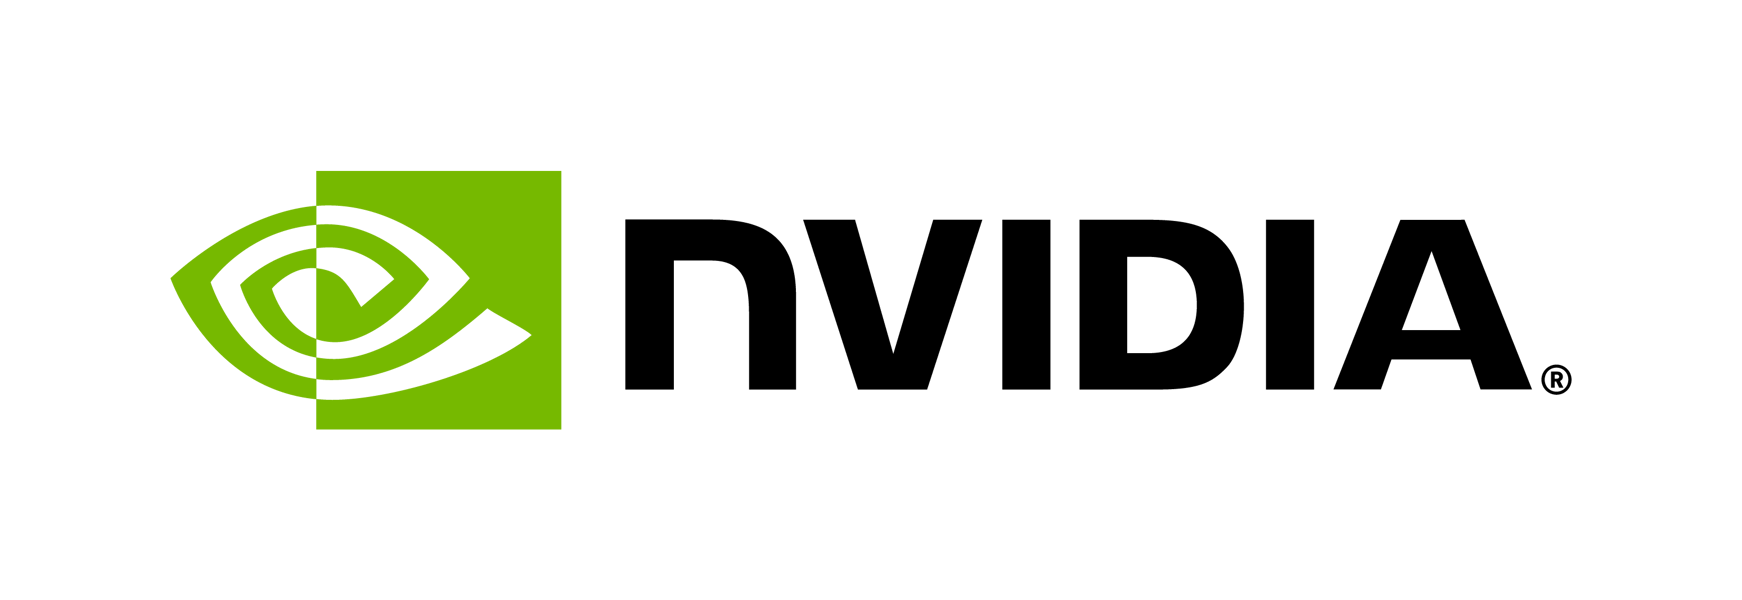 nvidia-logo-horiz-rgb-blk-for-screen (1)